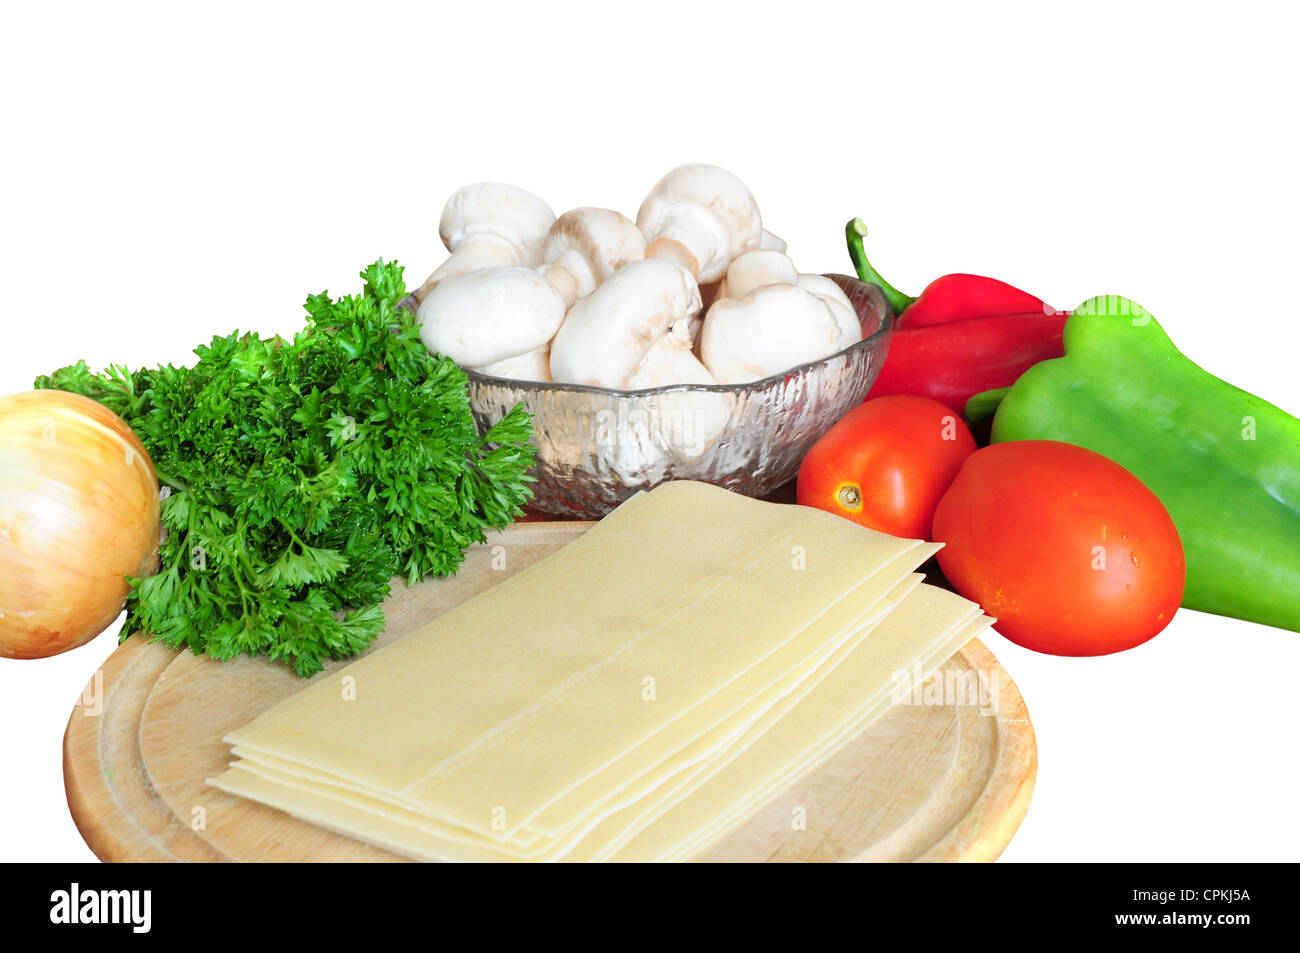 Zutaten für Lasagne - Tomaten, Pfeffer, Petersilie, Pilze, Zwiebeln, Nudeln auf weißem Hintergrund Stockfoto